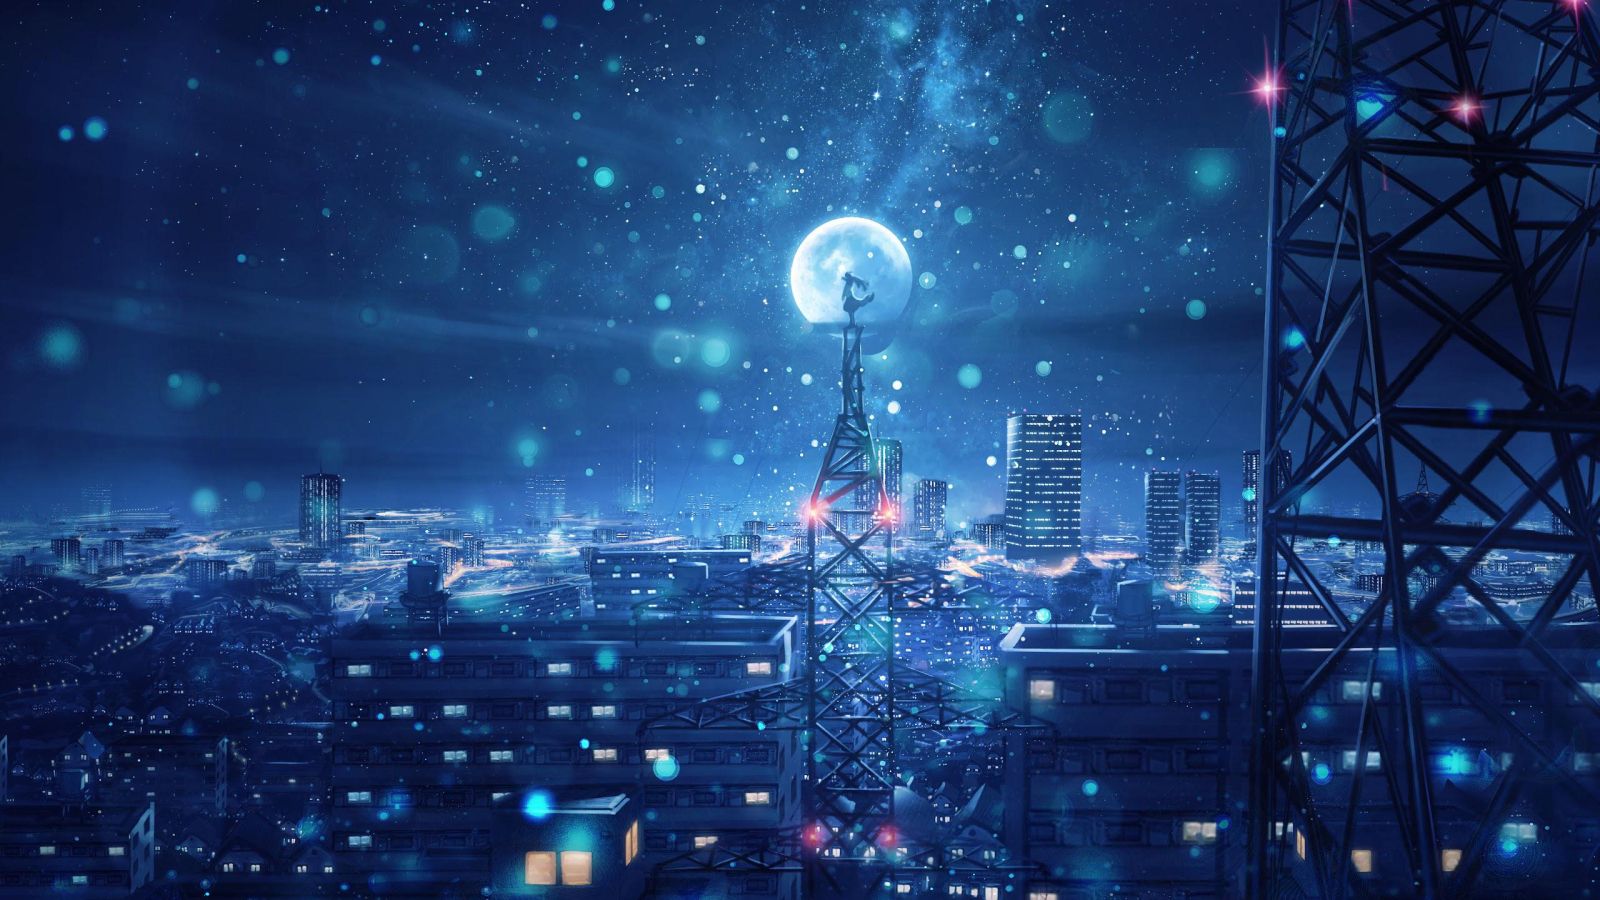 Bầu trời đêm với những hoa vàng là một trong những cảnh tượng đẹp nhất của anime. Hãy cùng tìm hiểu thêm về tiểu thuyết và bộ phim có nội dung đặc sắc, cùng chiêm ngưỡng những Anime Night Sky wallpaper tuyệt đẹp của chúng tôi.